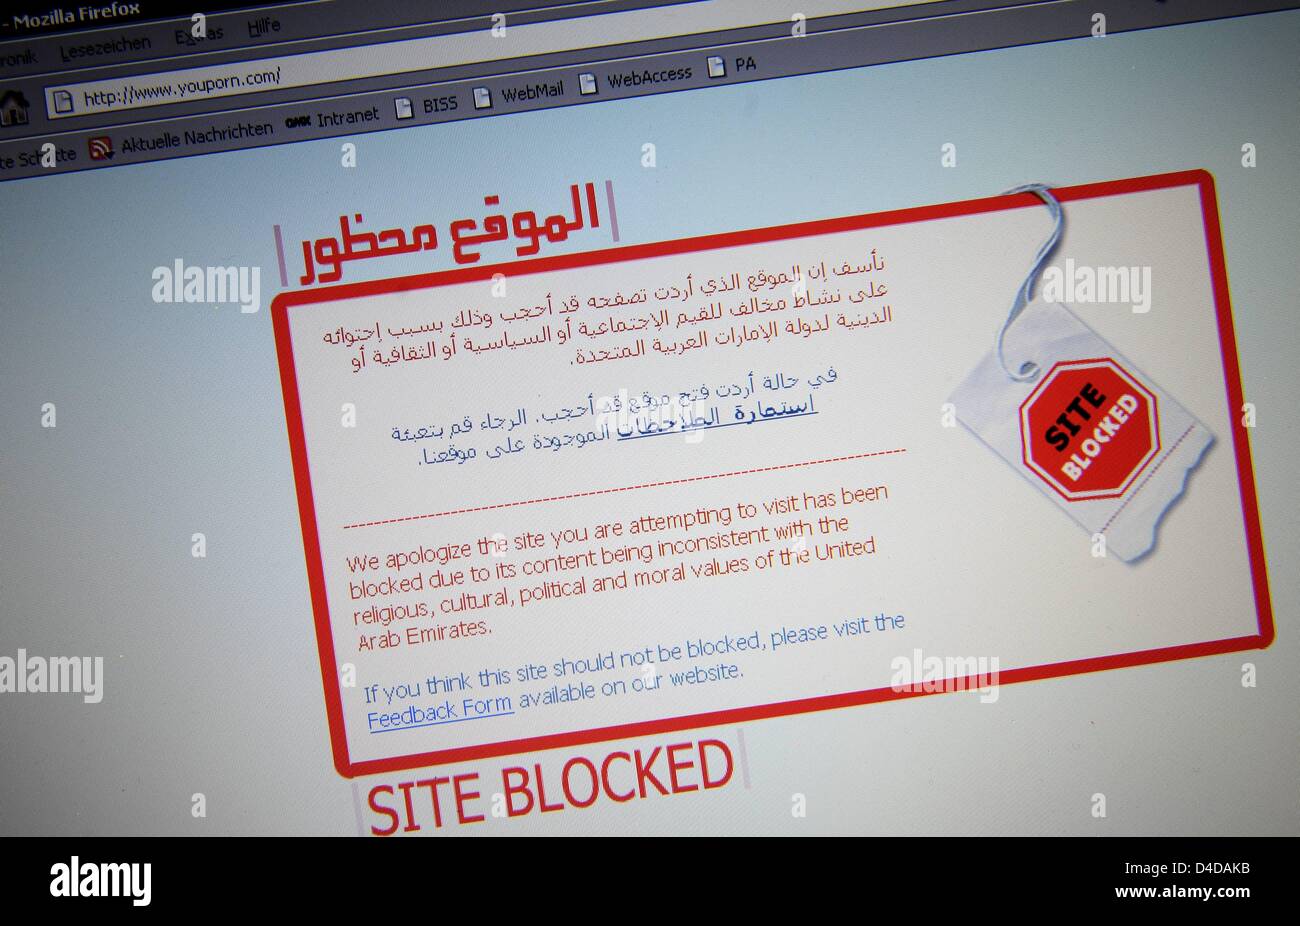 La foto mostra una pagina web bloccata con la lingua inglese e la lingua araba, a Doha, Qatar, 17 marzo 2008. In molti paesi il blocco di pagine web a causa di politiche, etiche o motivi religiosi. Foto: PETER KNEFFEL Foto Stock